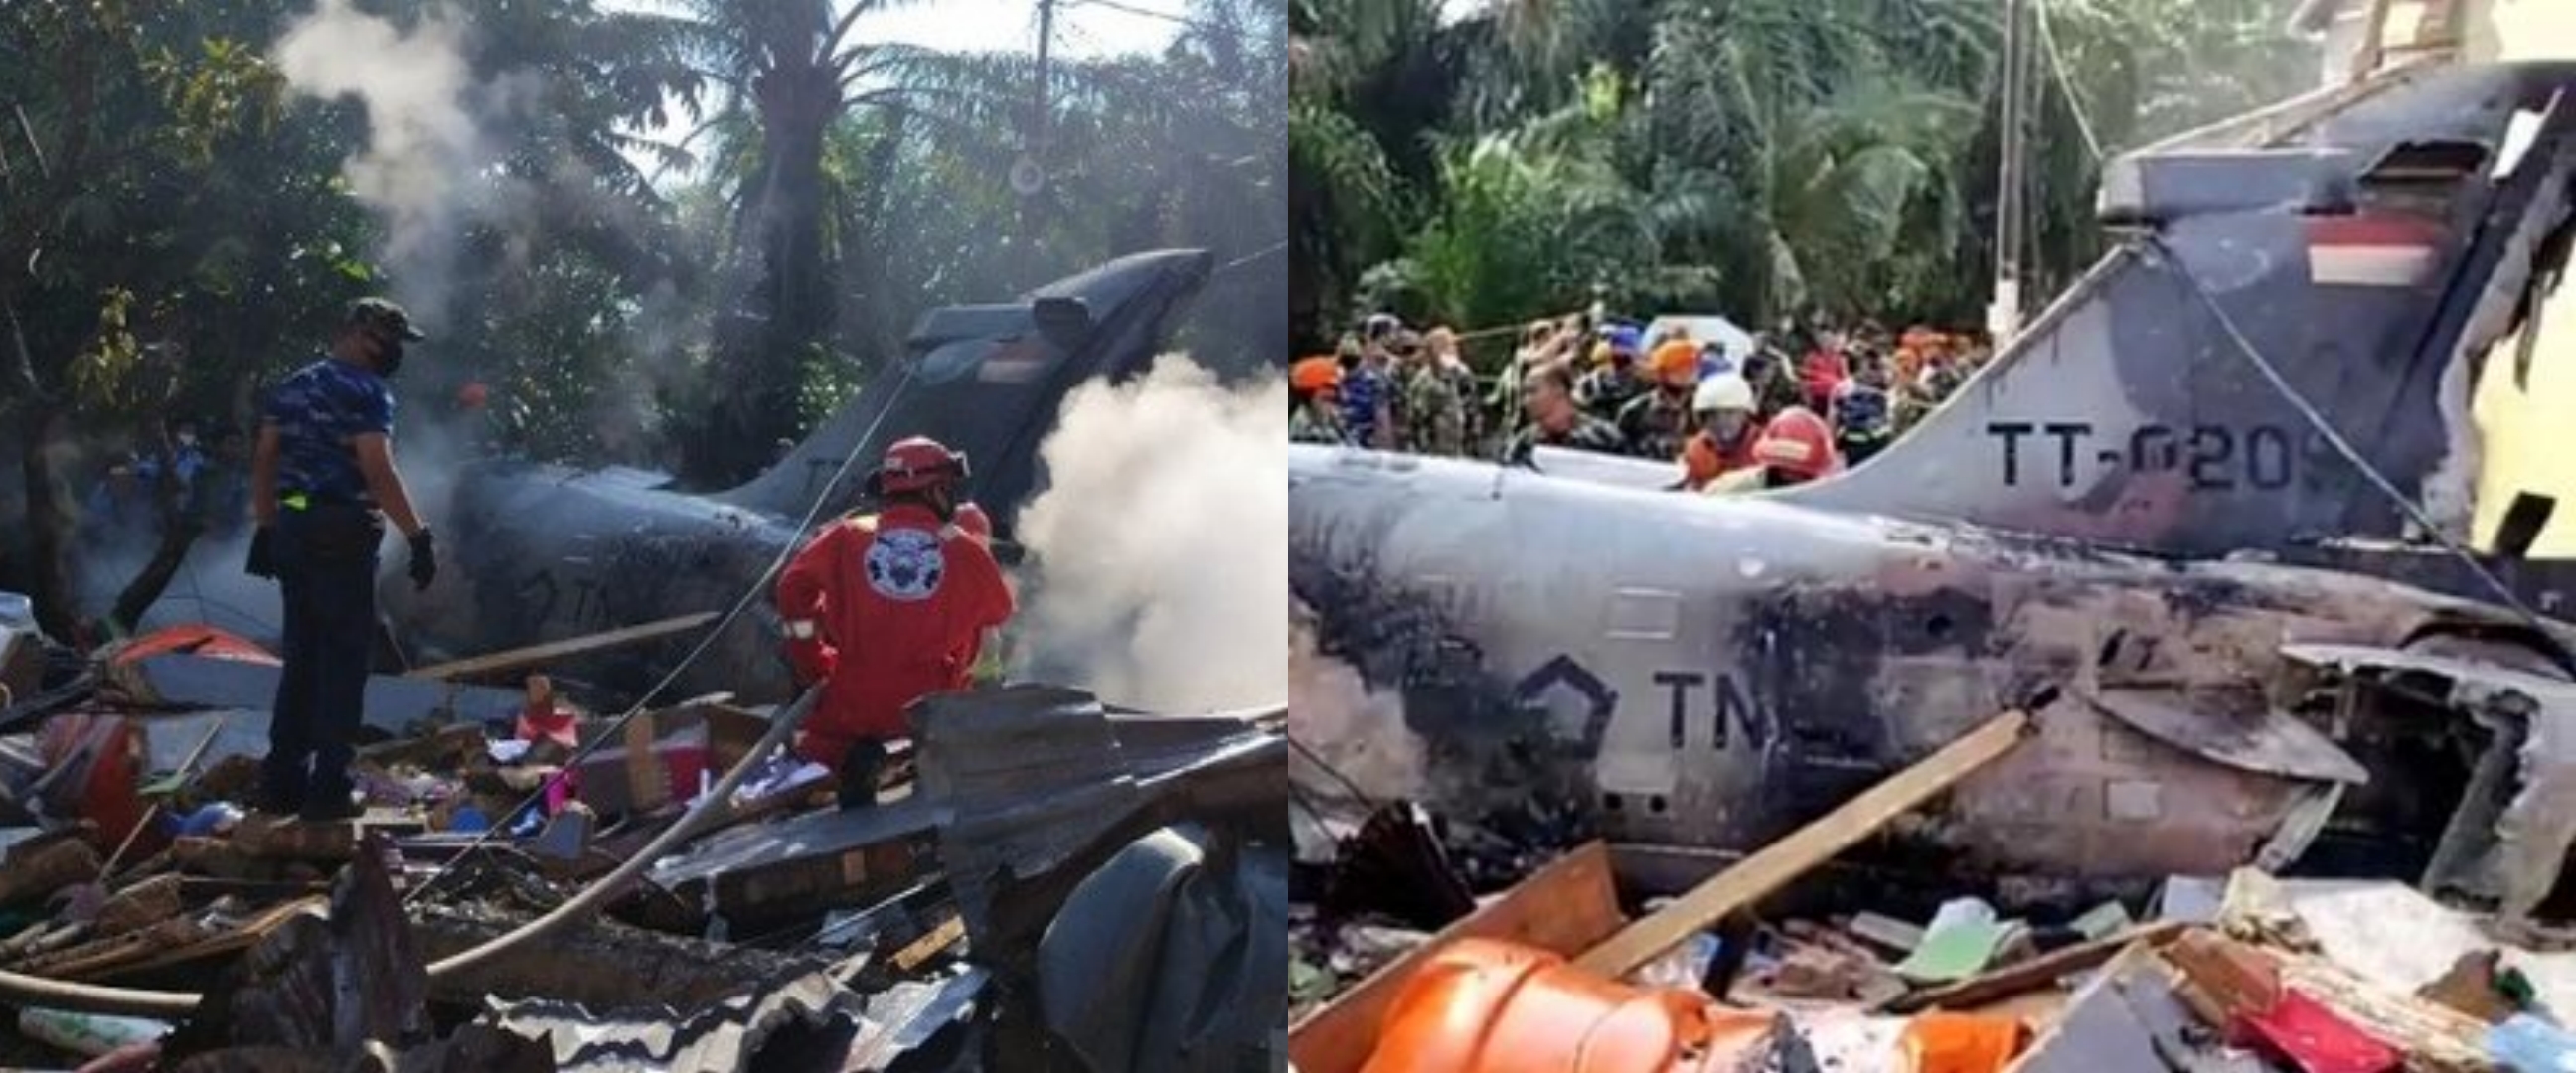 Ini kesaksian warga yang tolong pesawat tempur TNI AU jatuh di Riau